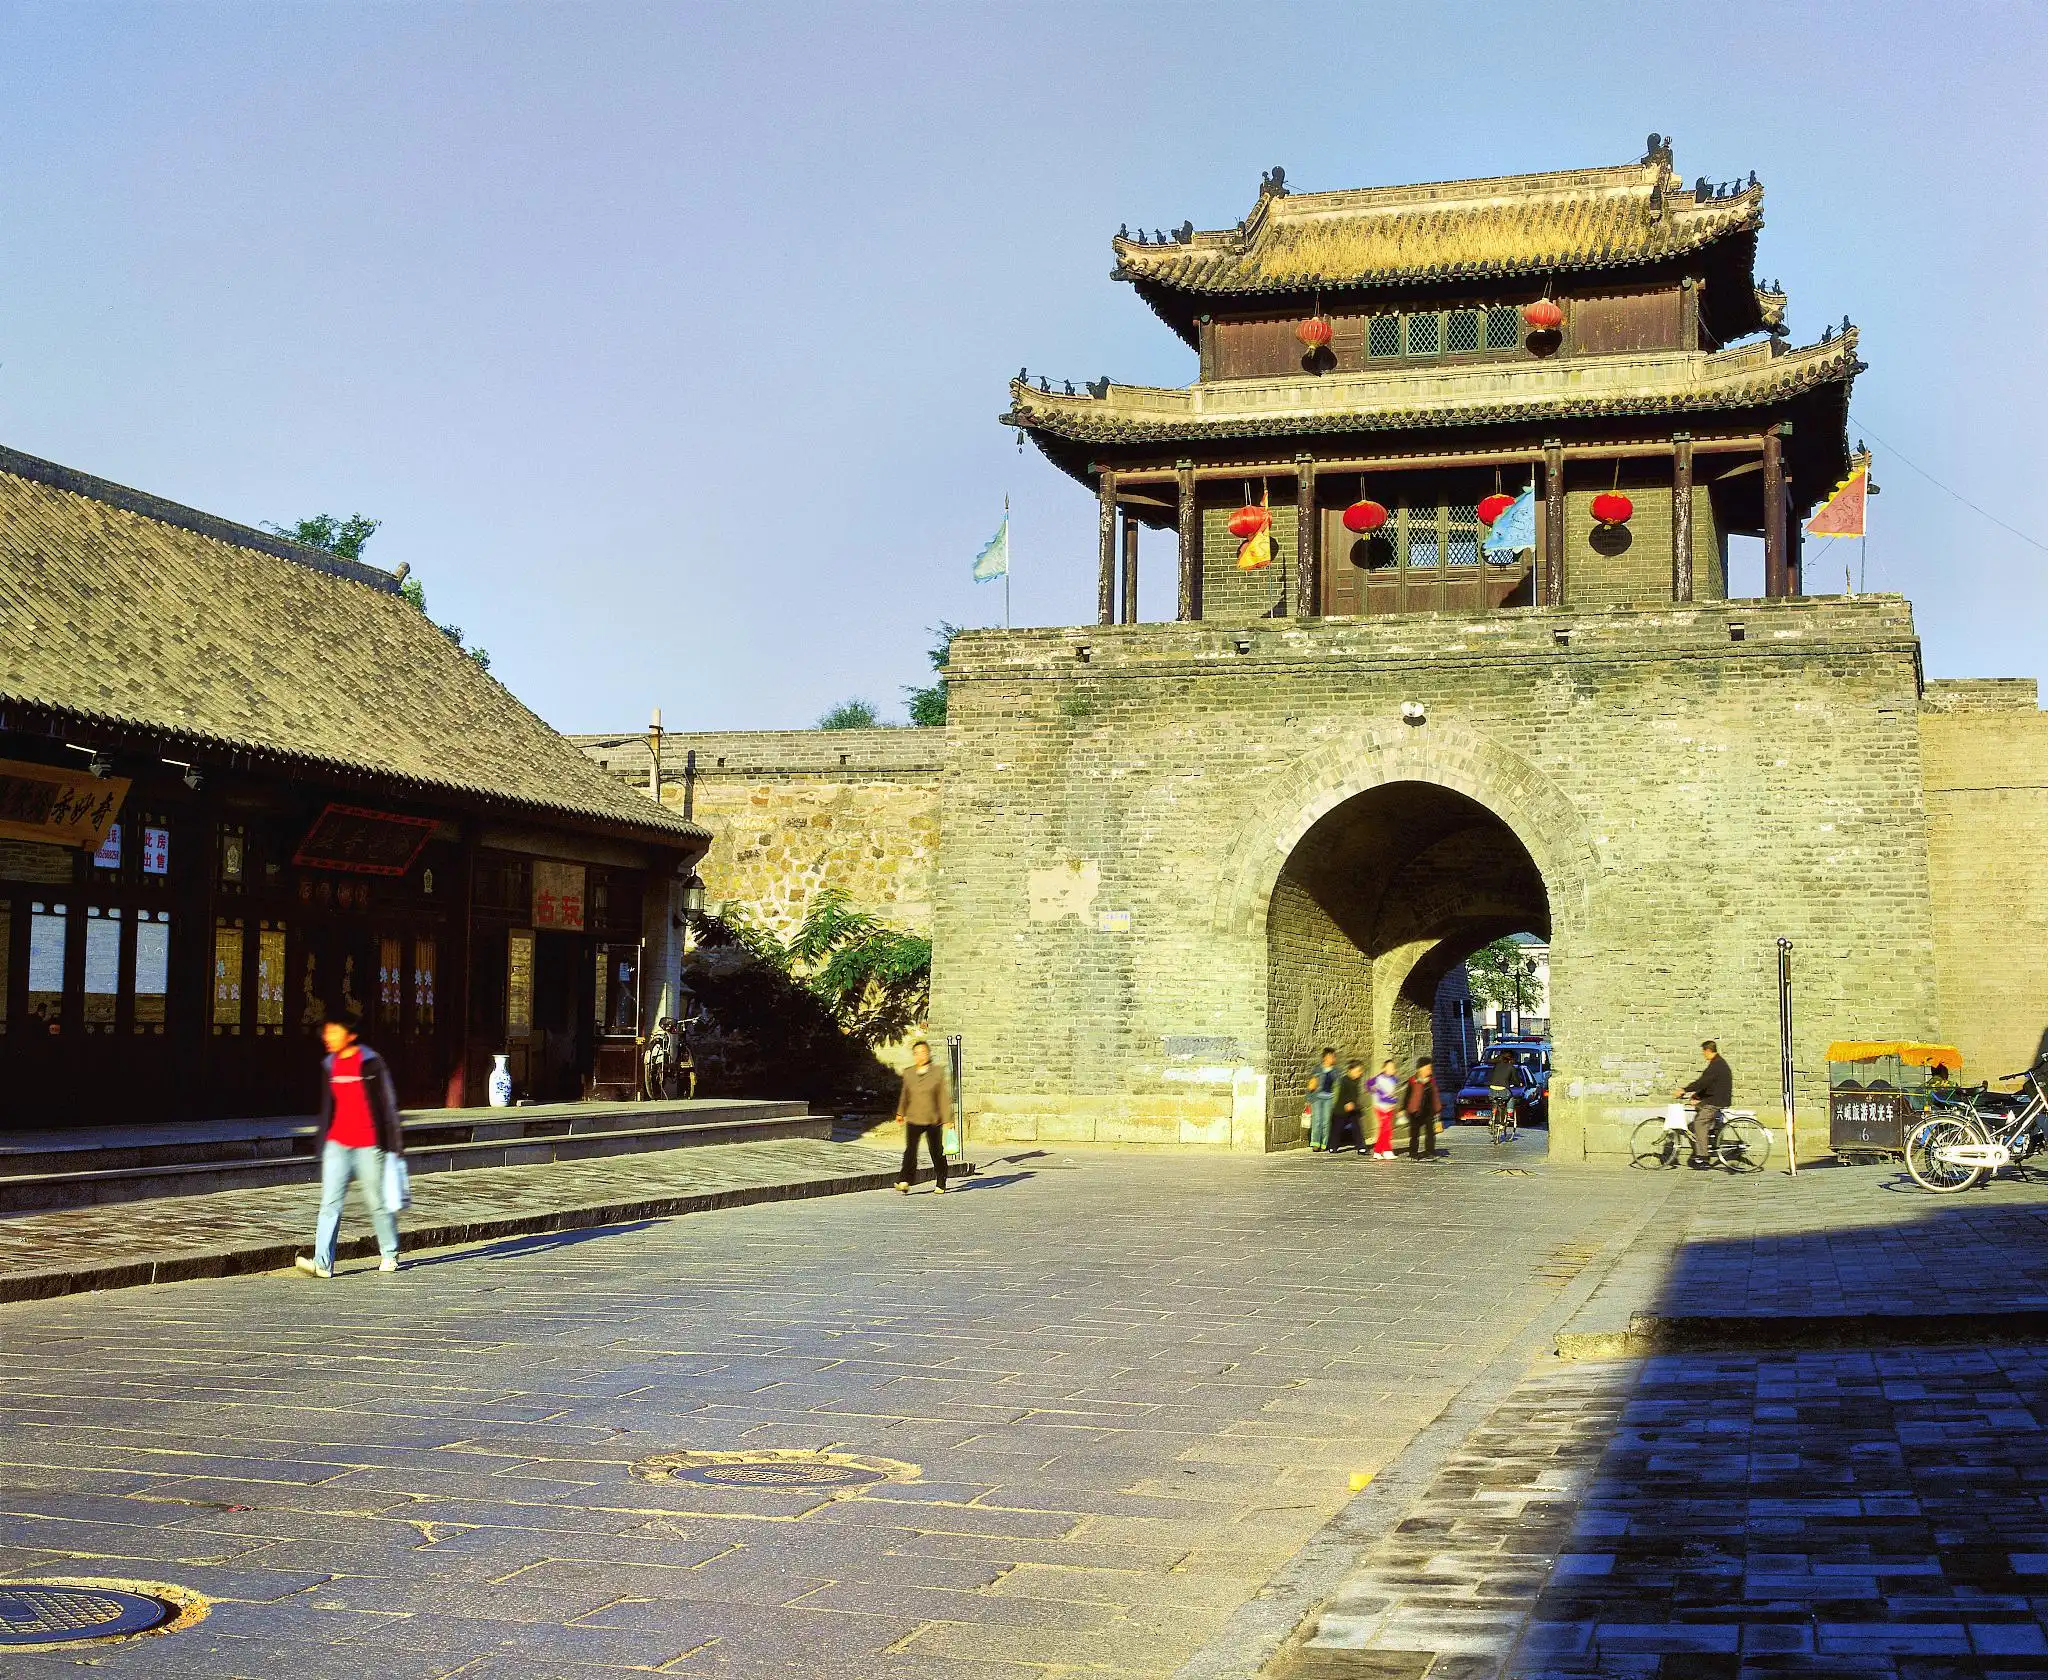 Xingcheng tourism